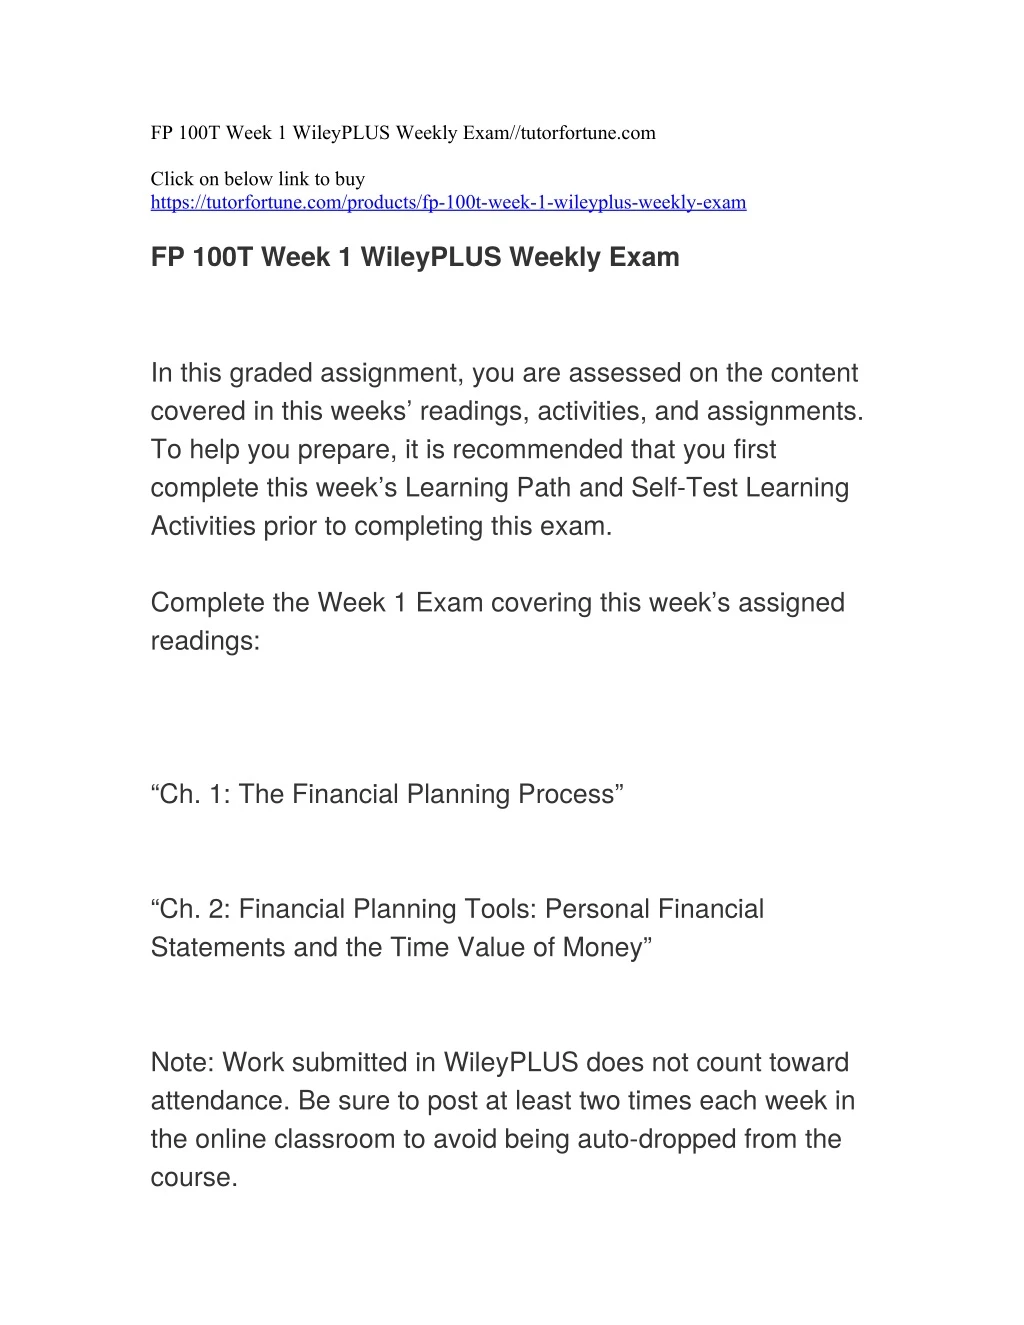 fp 100t week 1 wileyplus weekly exam tutorfortune